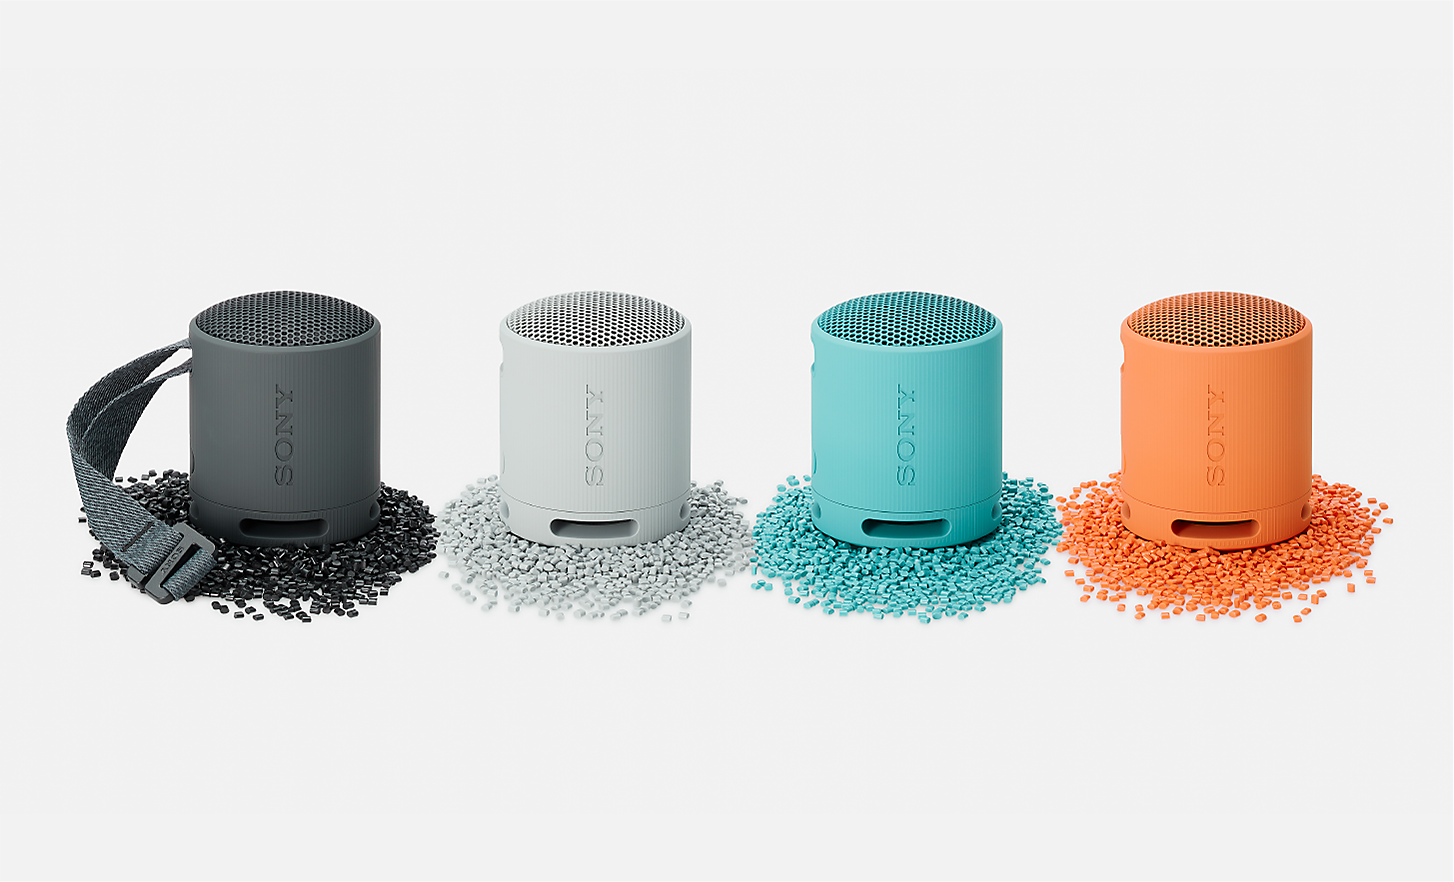 Afbeelding van de zwarte, witte, blauwe en oranje SRS-XB100-speakers die op plastic korrels in dezelfde kleur staan.